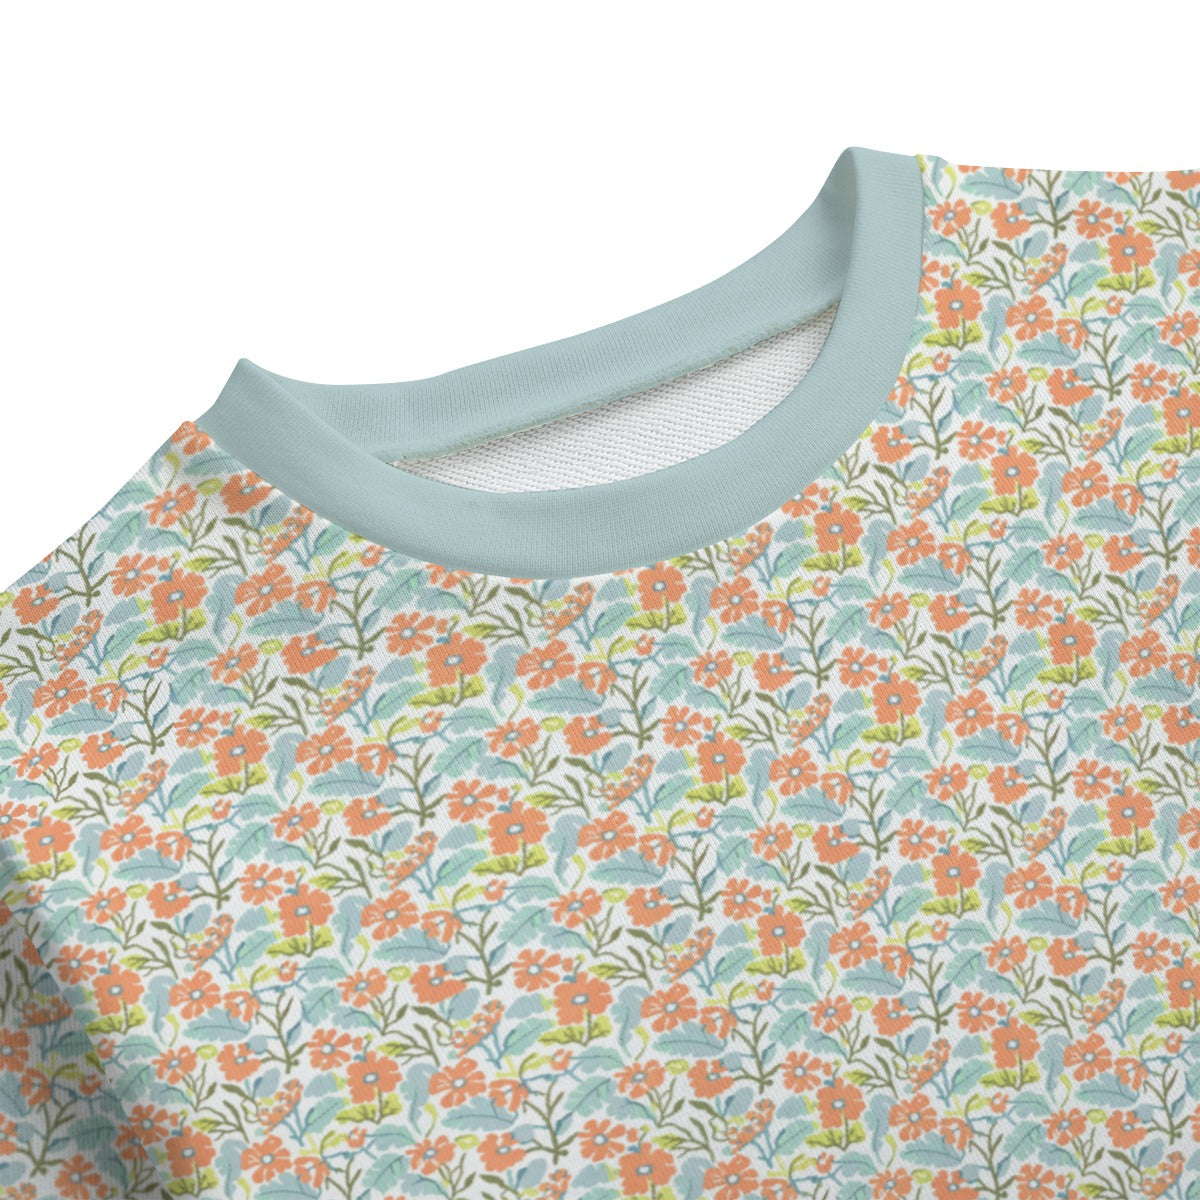 Vampire Art Kids' 100% Cotton Round Neck Sweatshirt | 310GSM Cotton - Orange Flowers